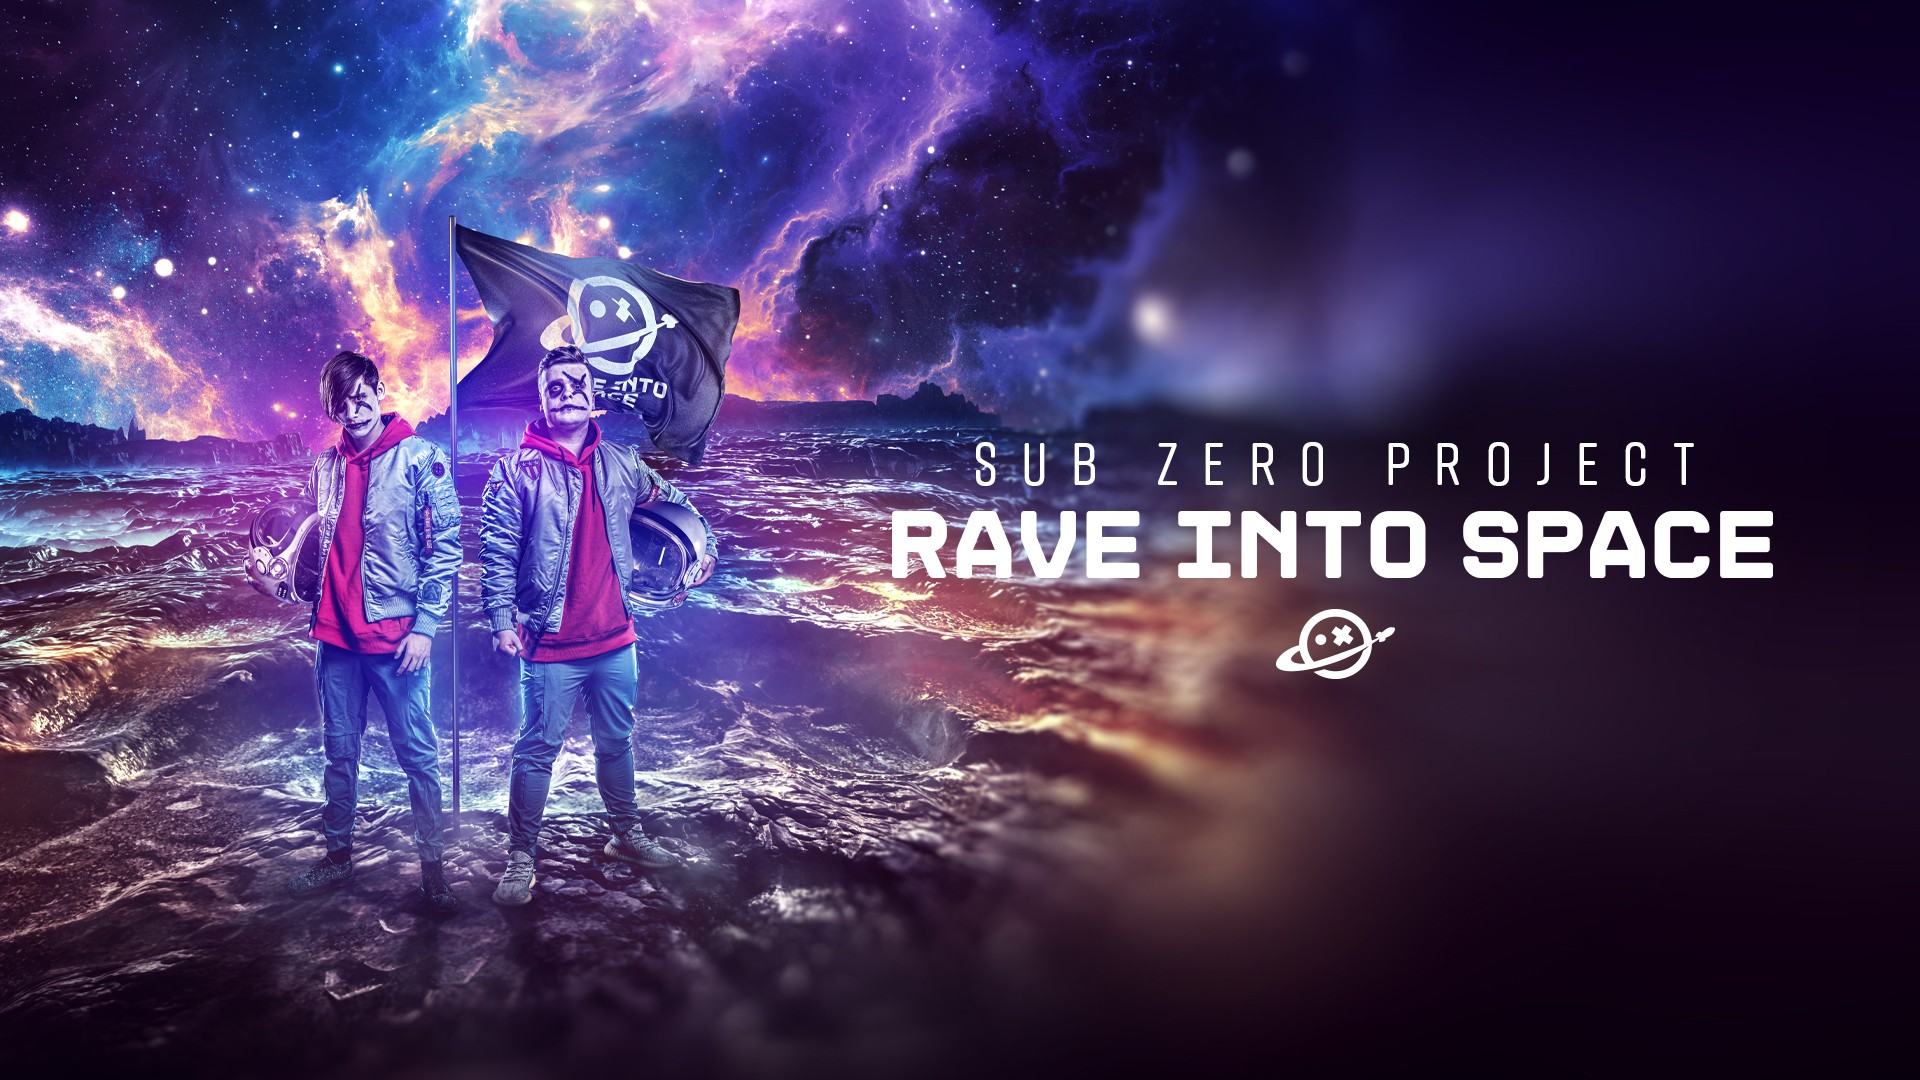 Sub Zero Project LIVE